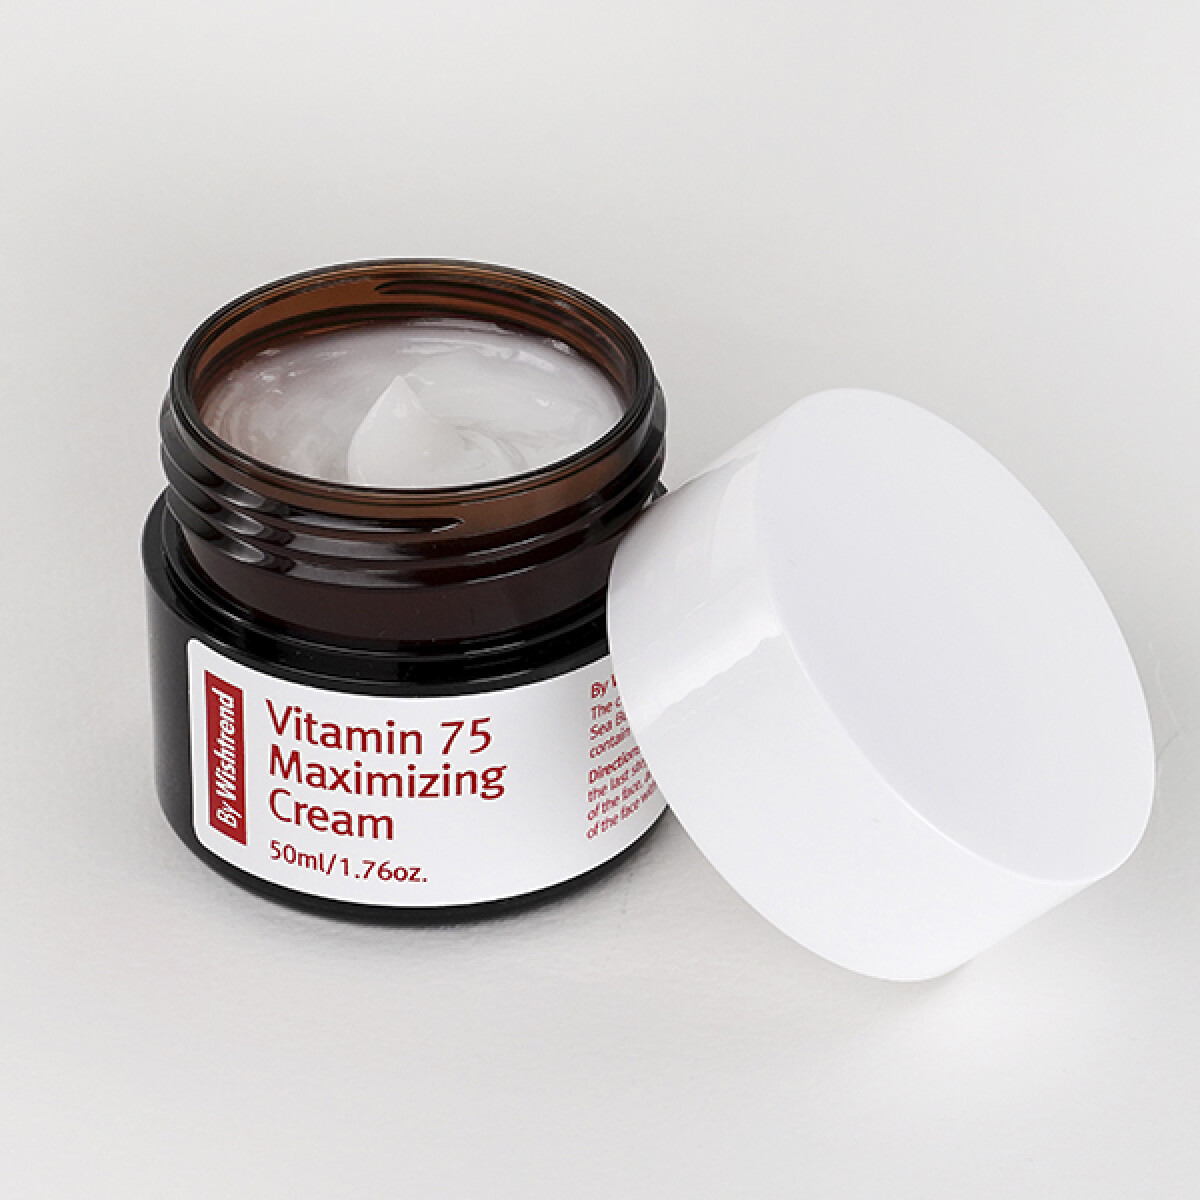 Crema hidratante Vitaminizante - ByWishtrend Vitamin 75 Maximizing Cream (50 ml) 